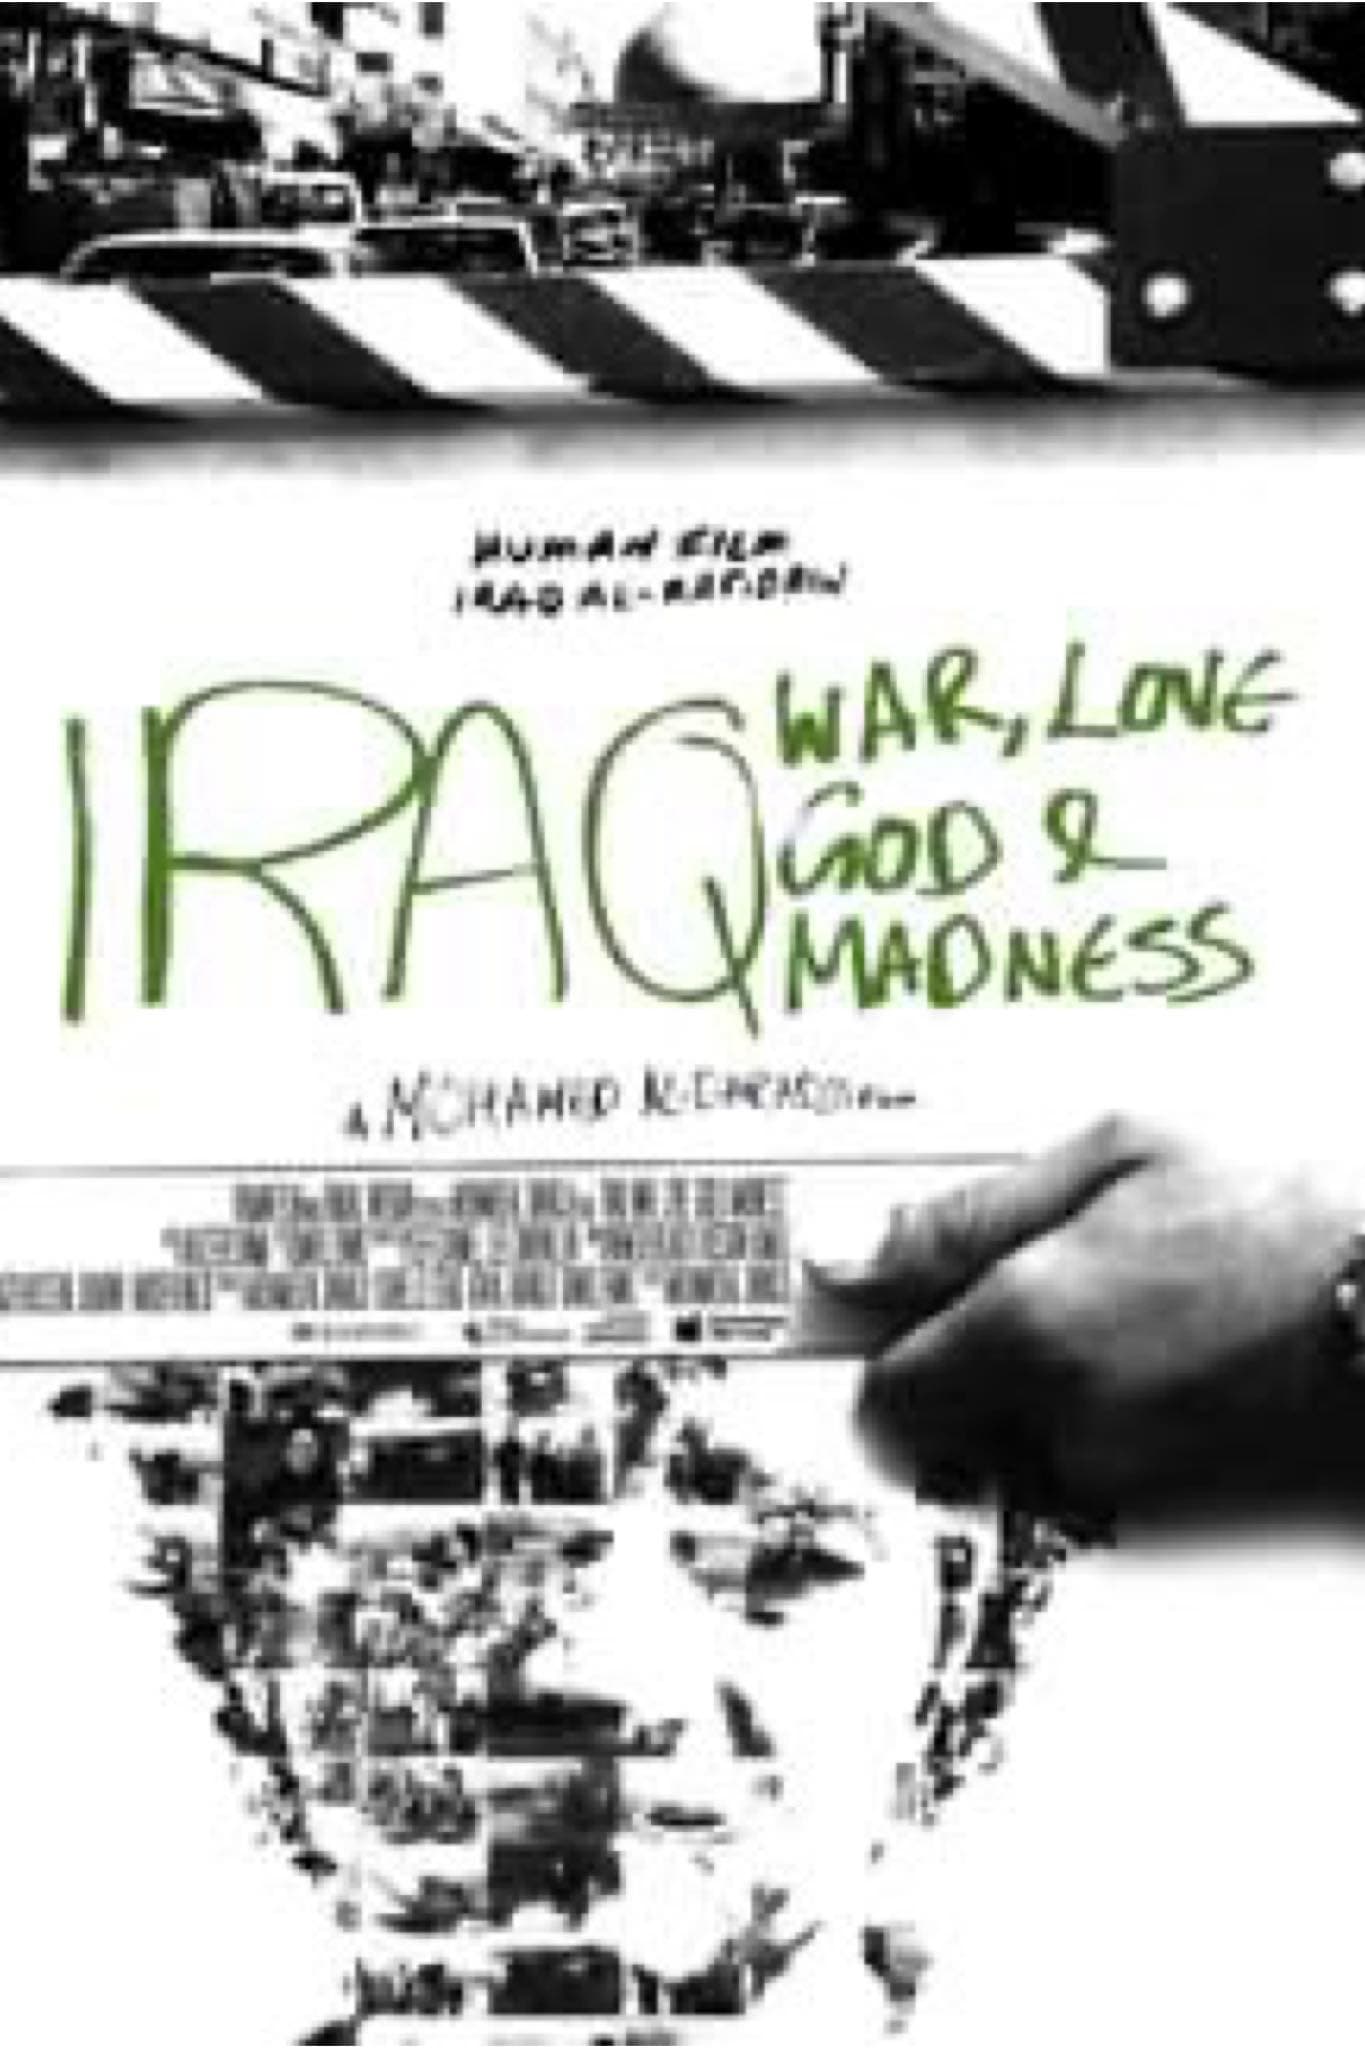 Iraq: God, Love, War and Madness